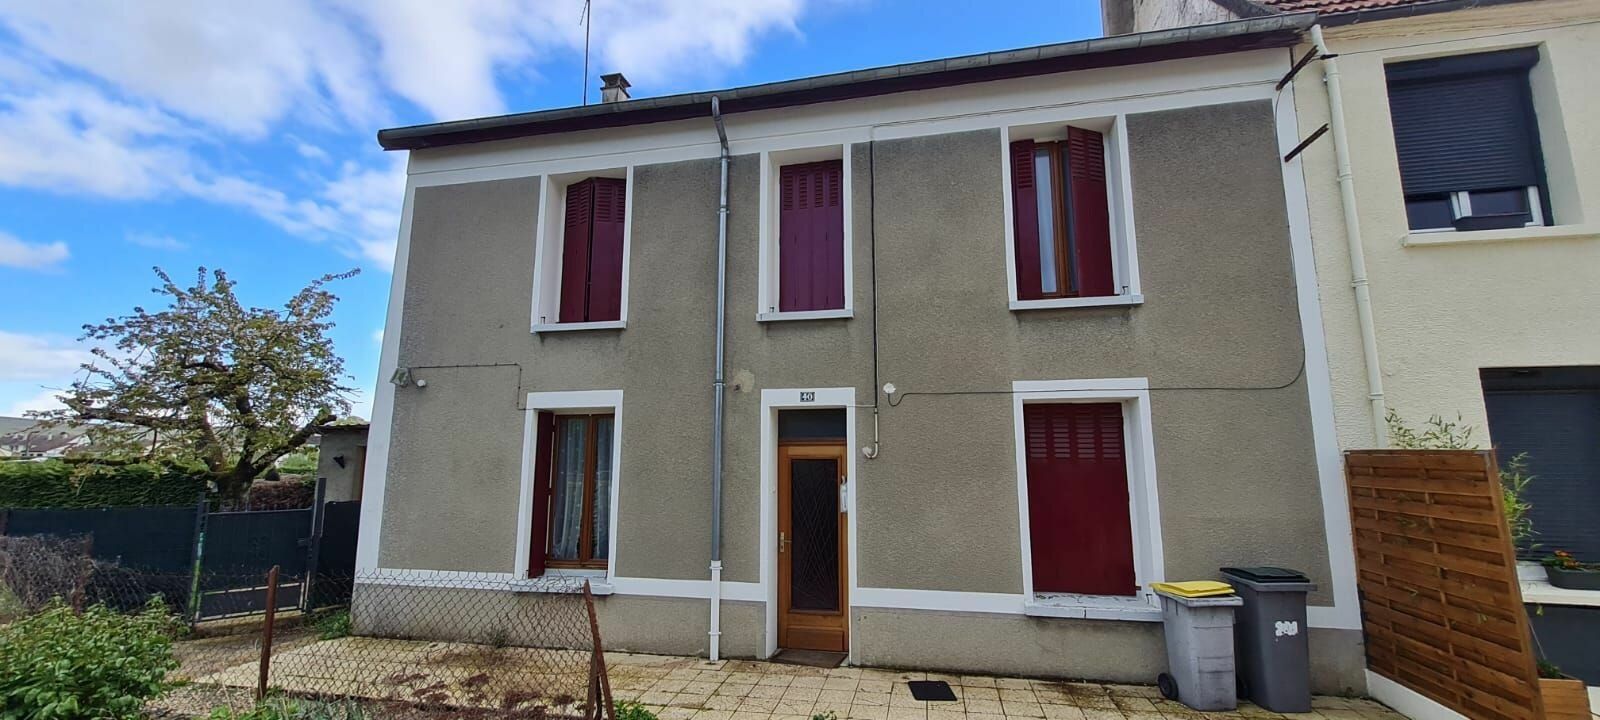 Maison à vendre 5 145m2 à Saâcy-sur-Marne vignette-1